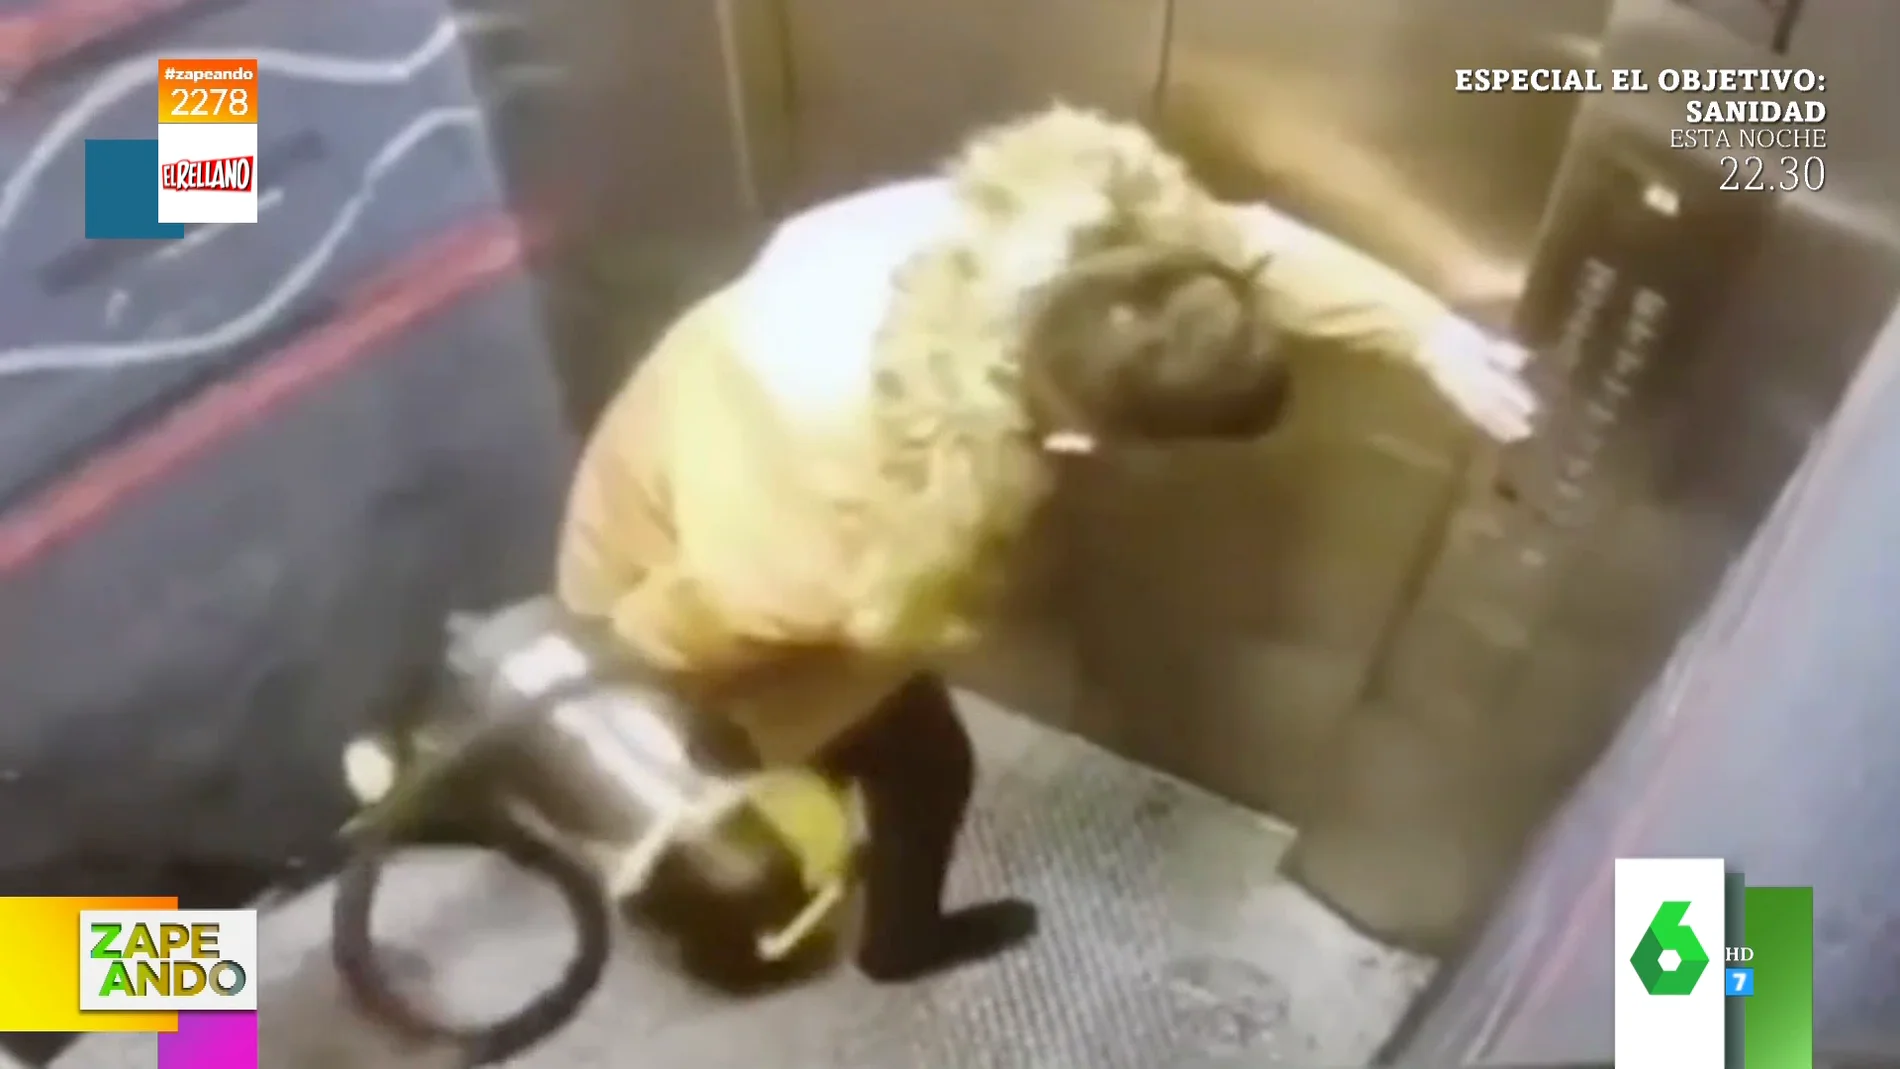 El 'viaje' que mete una aspiradora a un hombre al quedarse el cable enganchado fuera del ascensor 